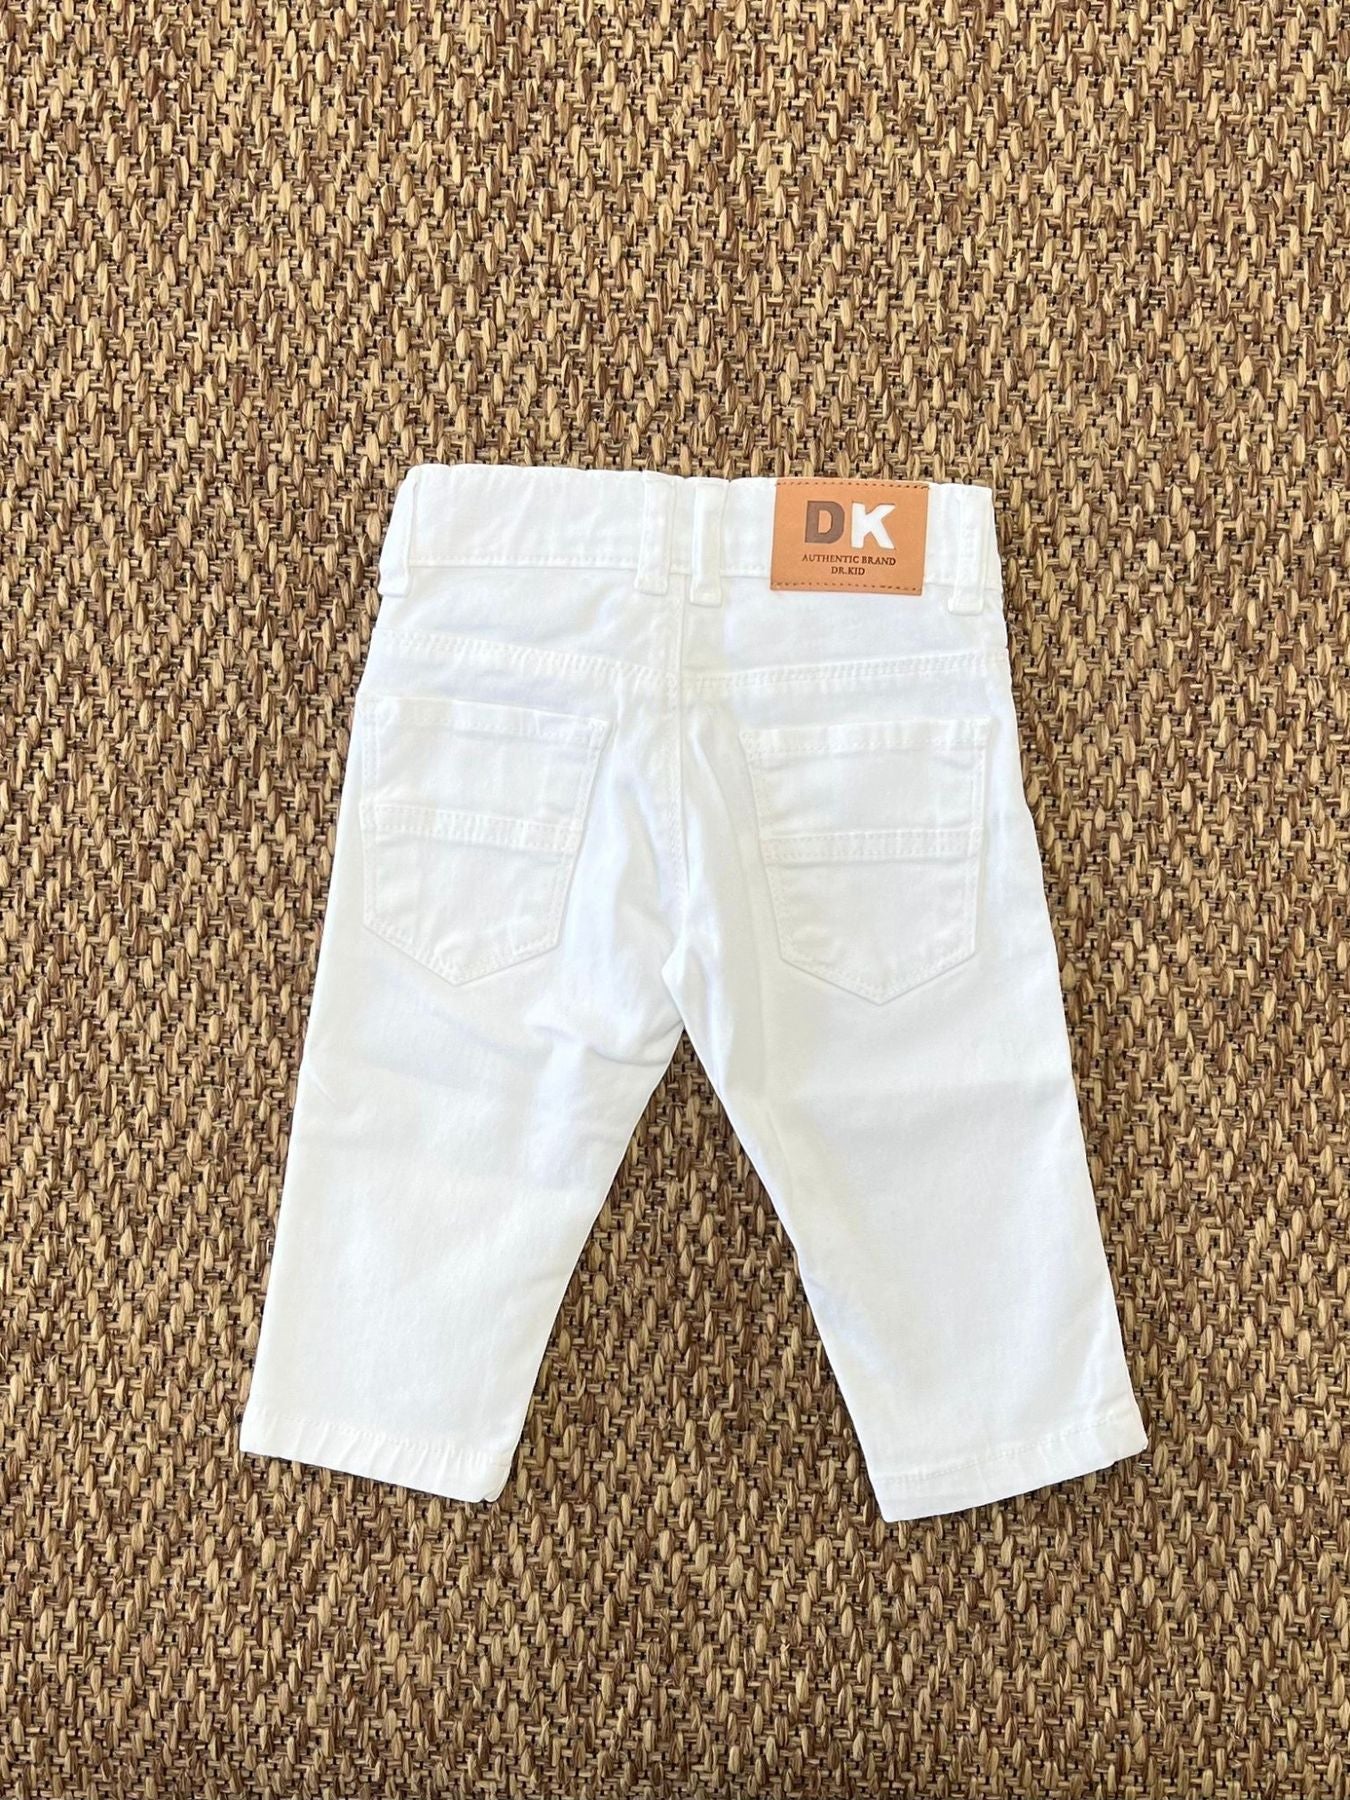 Pantaloni - DK53/PV24